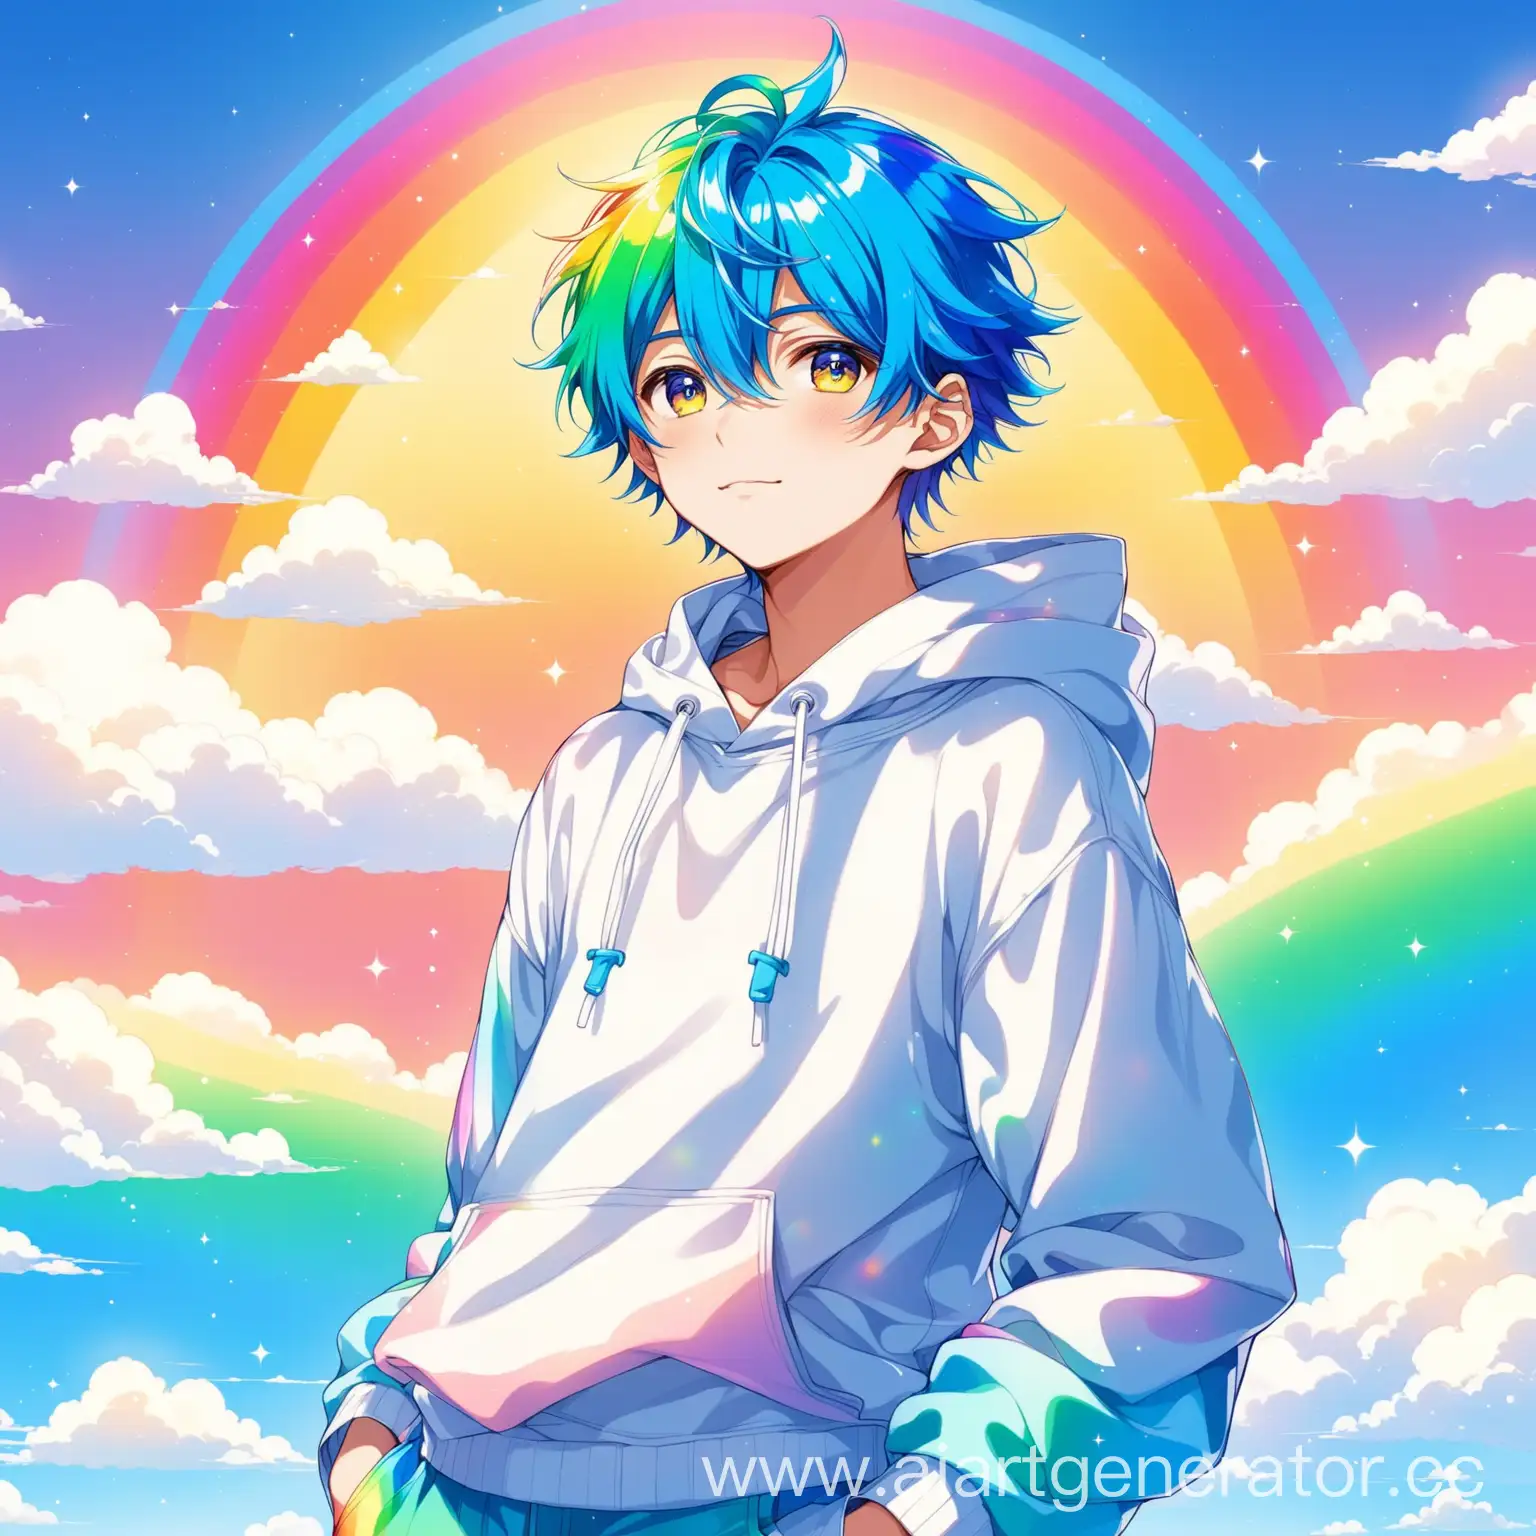 Аниме парень 16 лет с голубыми волосами в одежде в стиле радужного облачка 